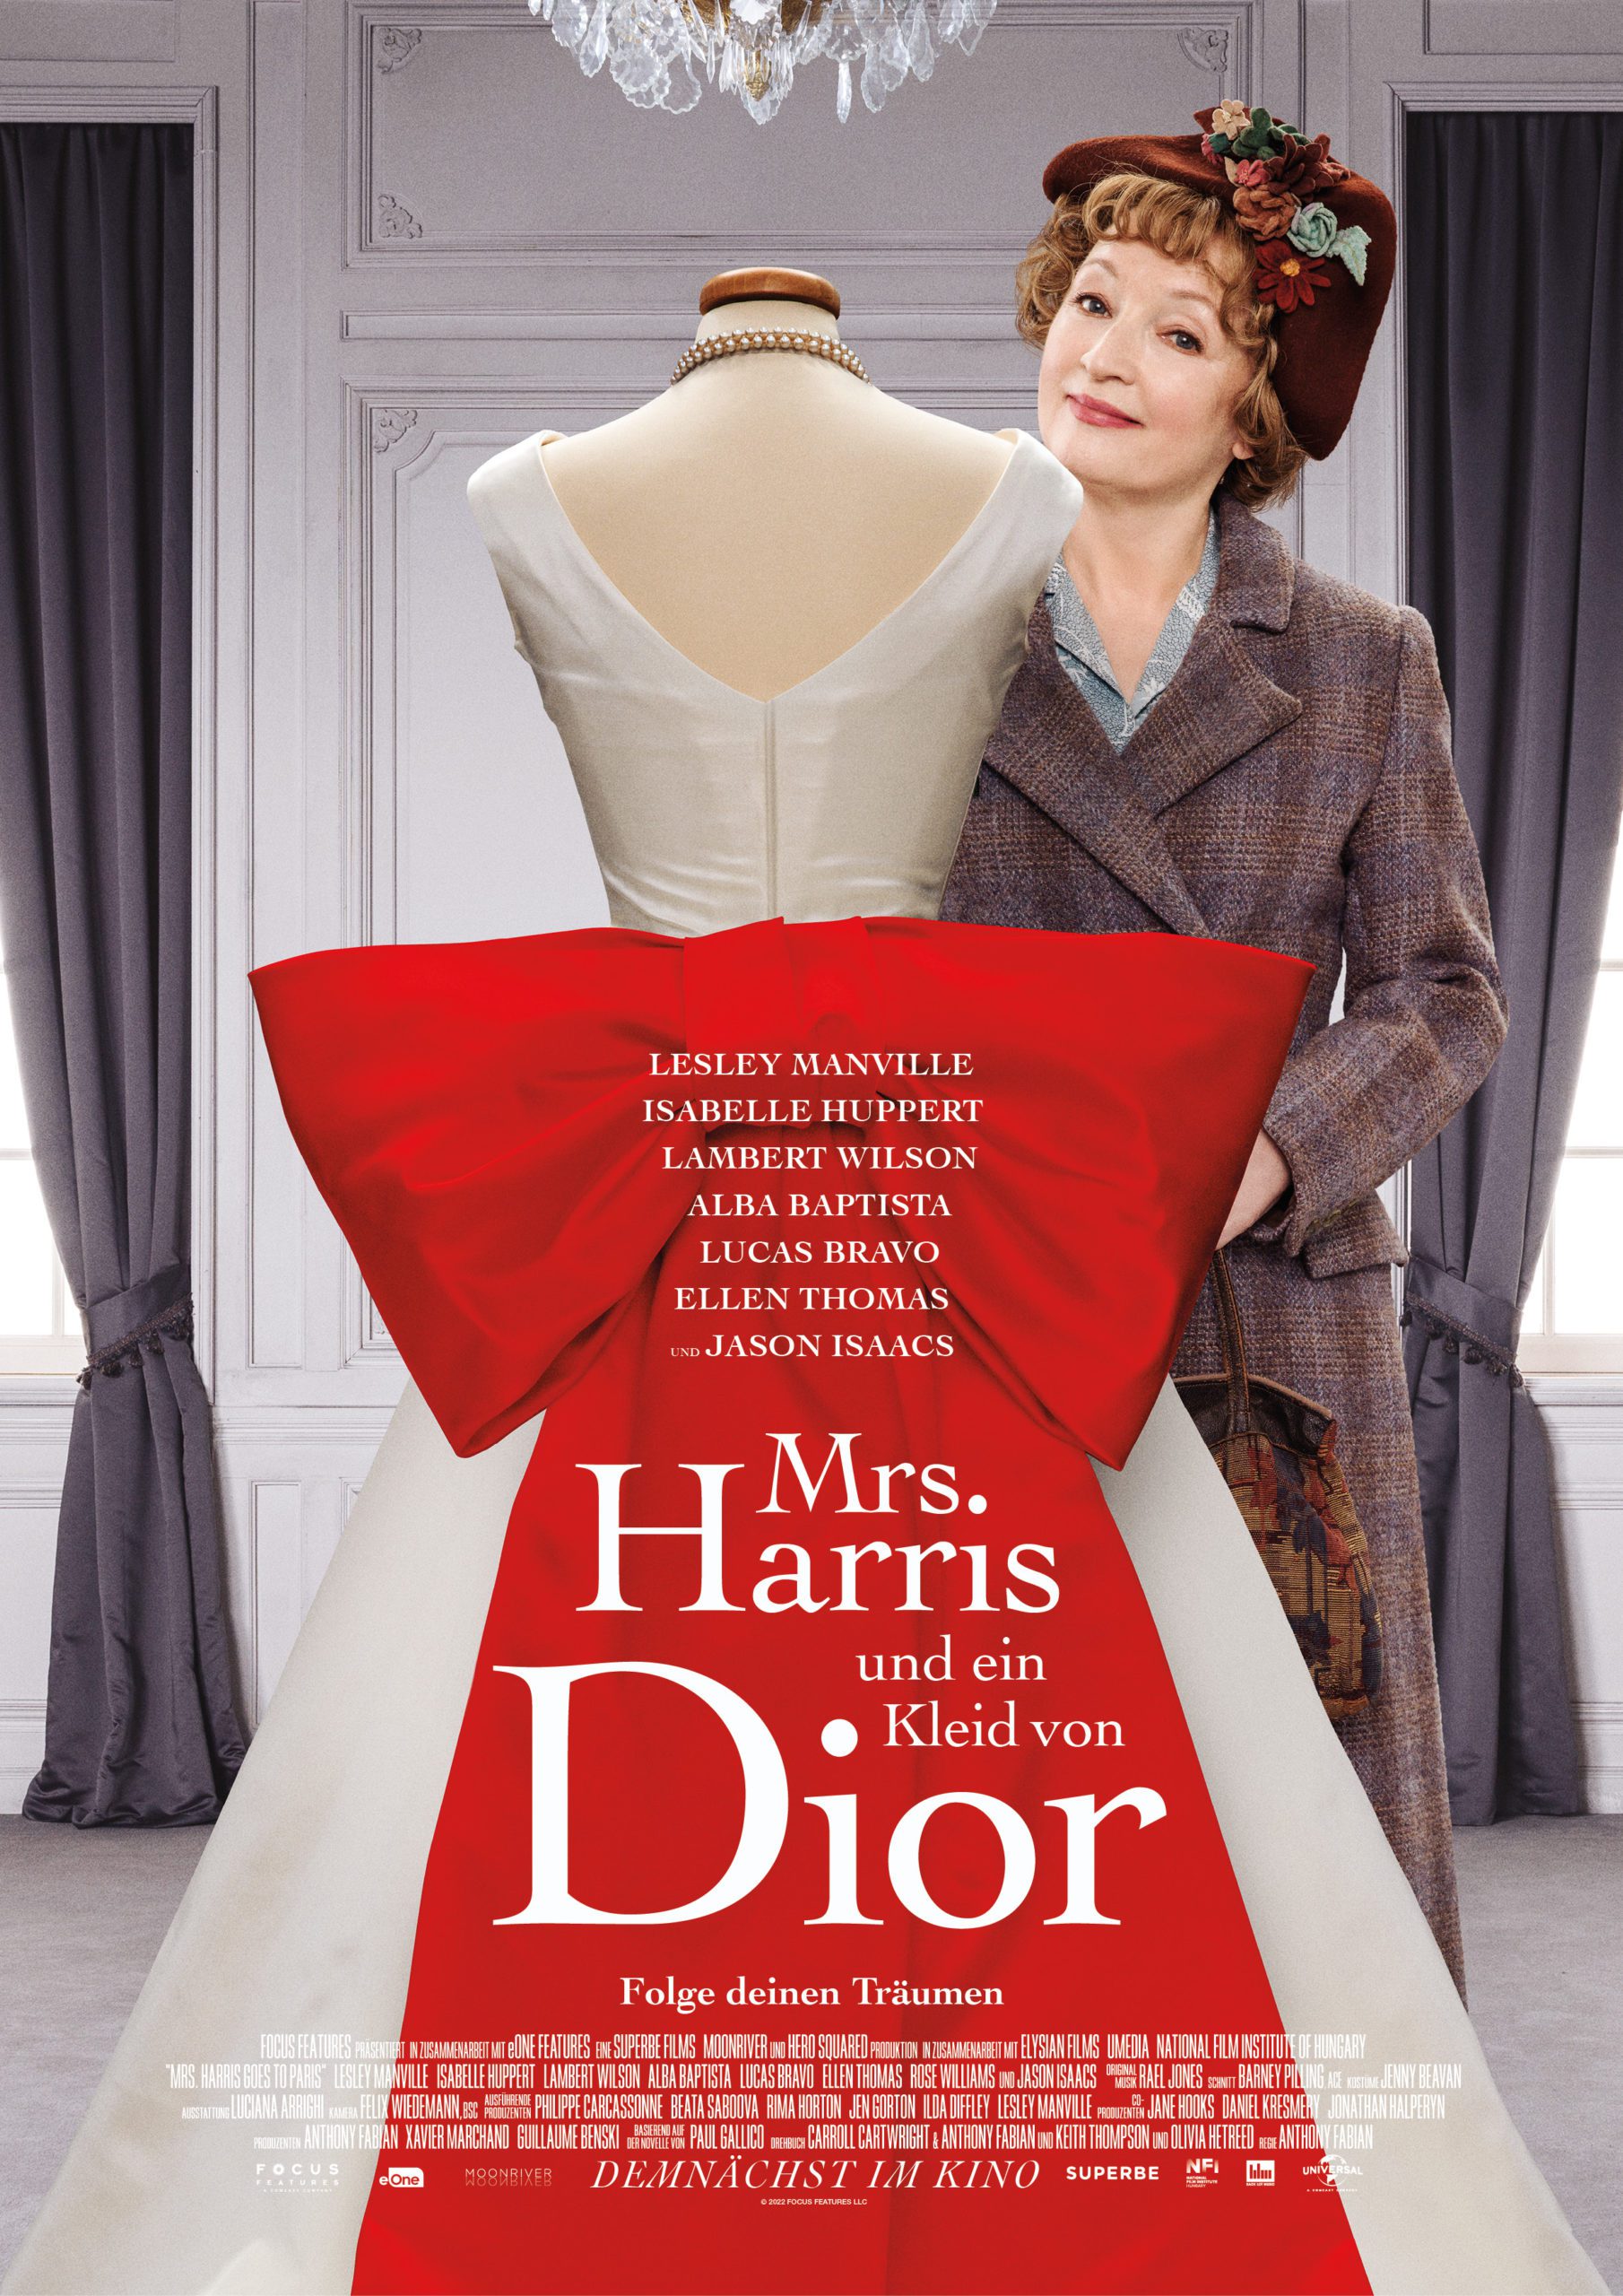 Erster Trailer zu "MRS. HARRIS UND EIN KLEID VON DIOR" - Kinostart am 10. November 2022